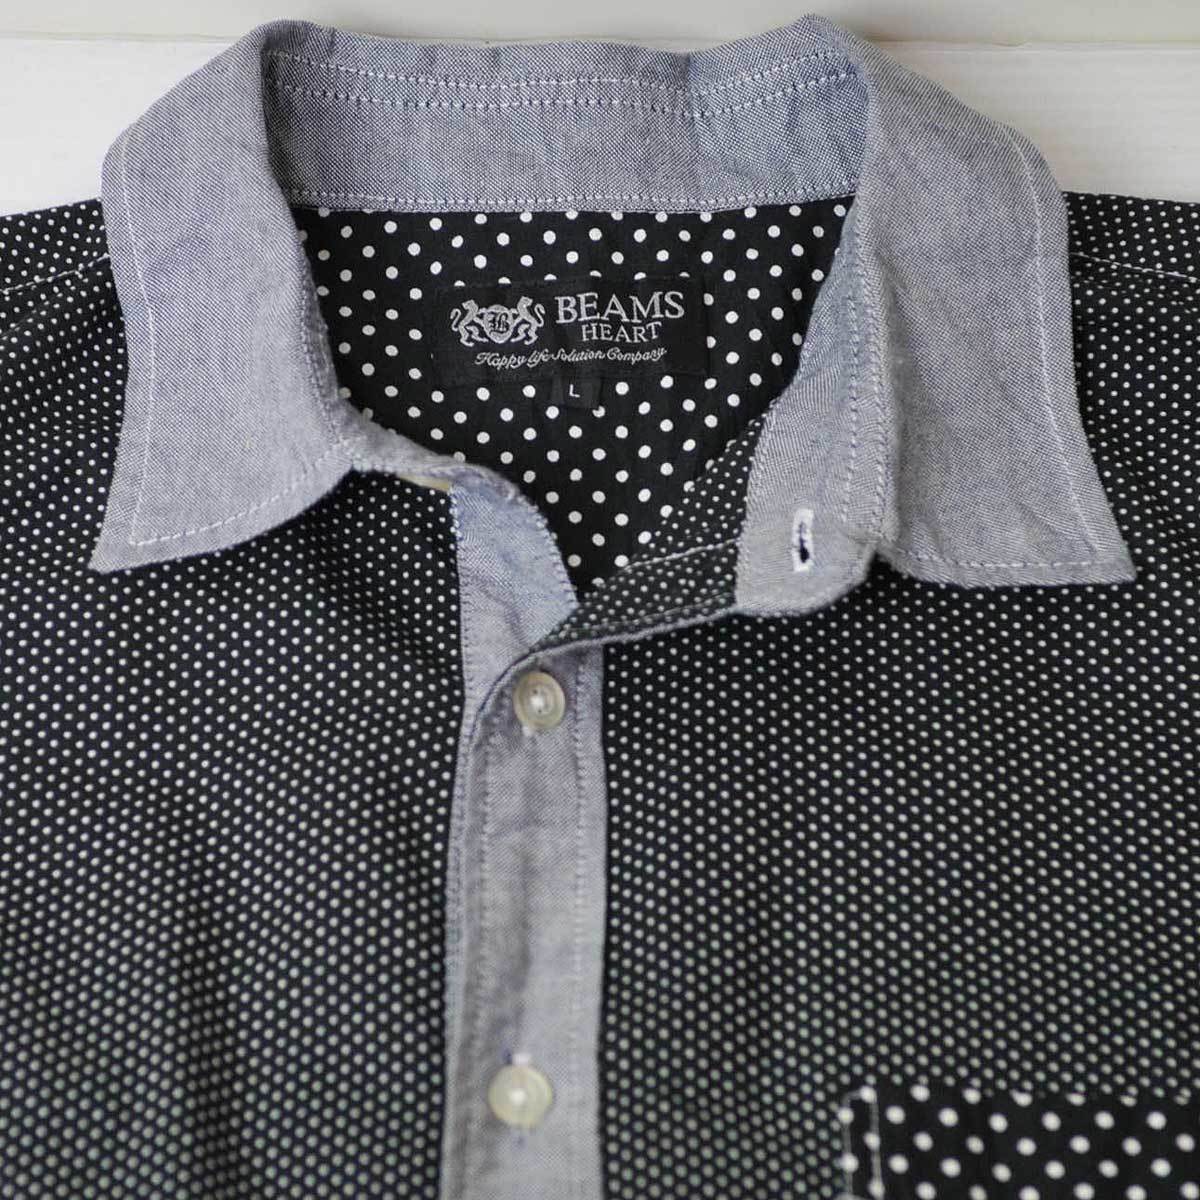  old clothes * Beams Heart short sleeves shirt black dot polka dot L xwp